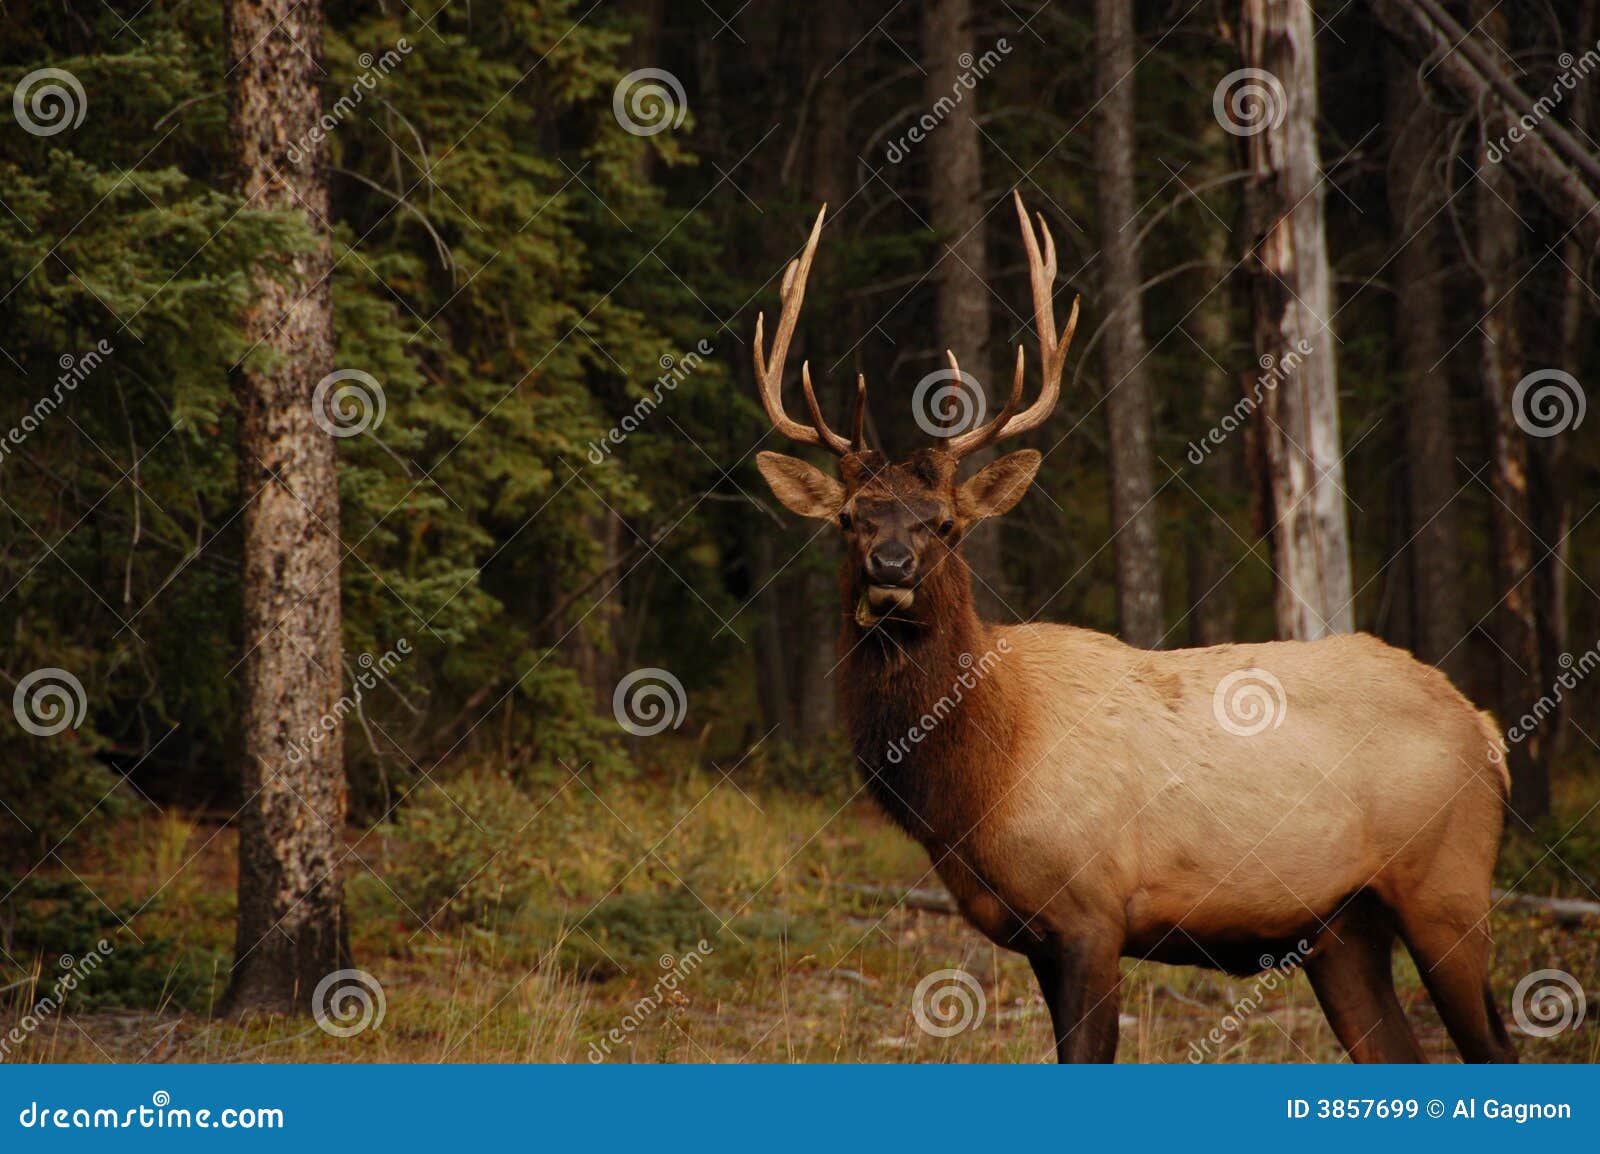 elk in banff alberta